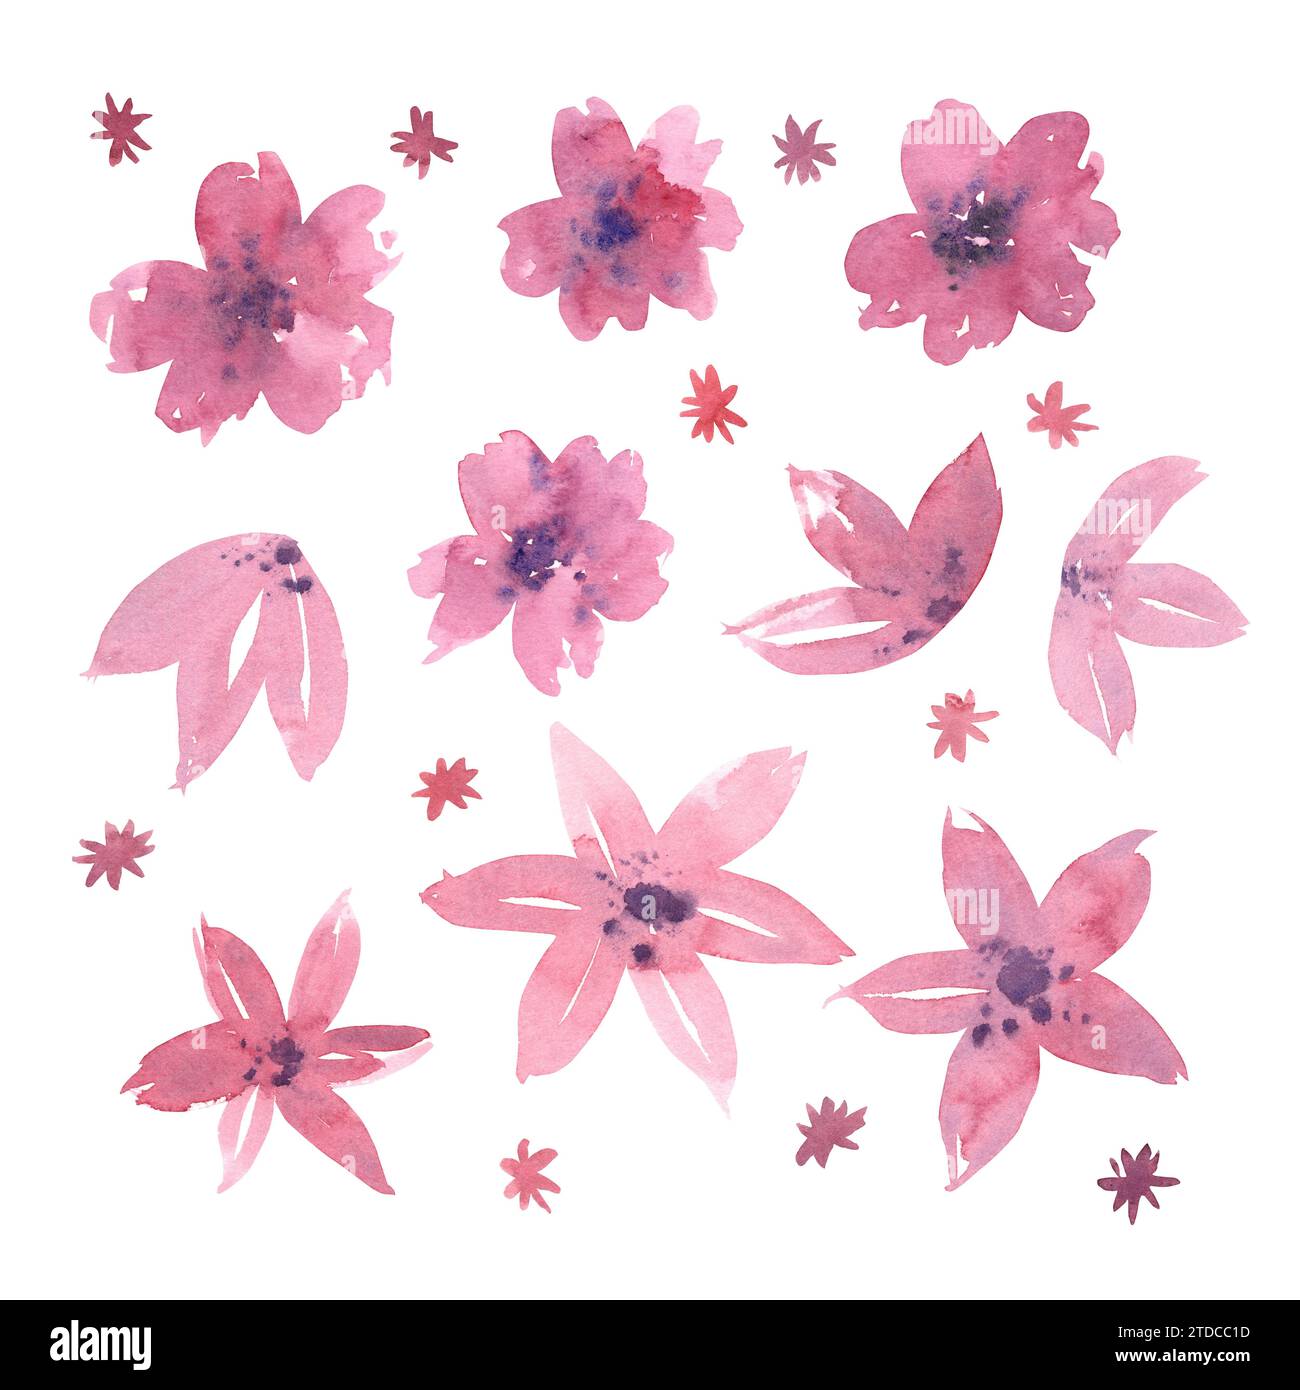 Motivo floreale ad acquerello con fiori rosa. Illustrazione botanica ad acquerello disegnata a mano. Da utilizzare per la progettazione di matrimoni, biglietti d'auguri, 8 marzo, Mamma Foto Stock